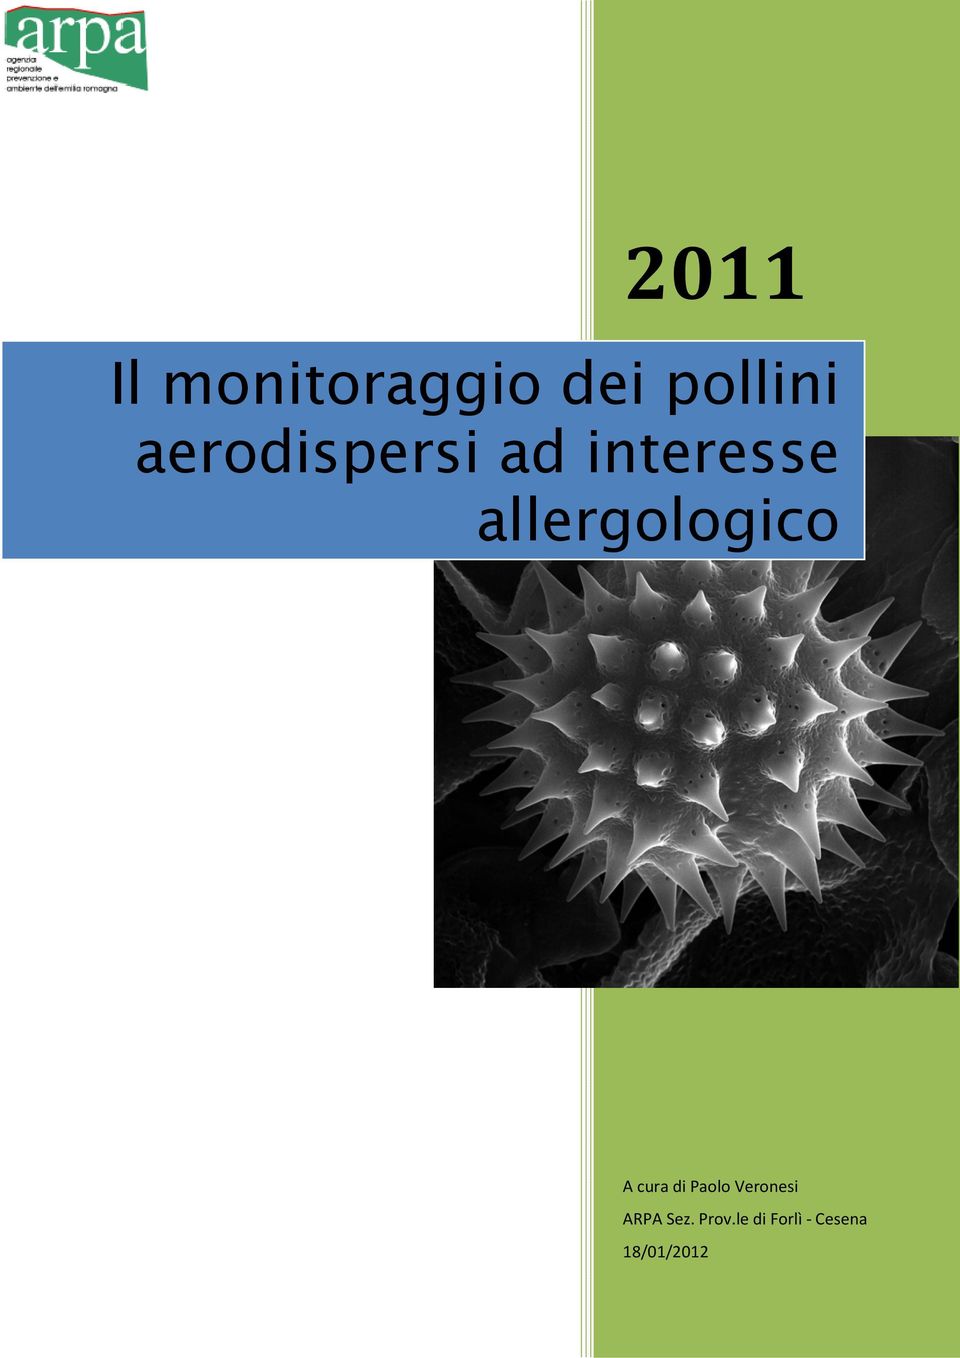 allergologico A cura di Paolo